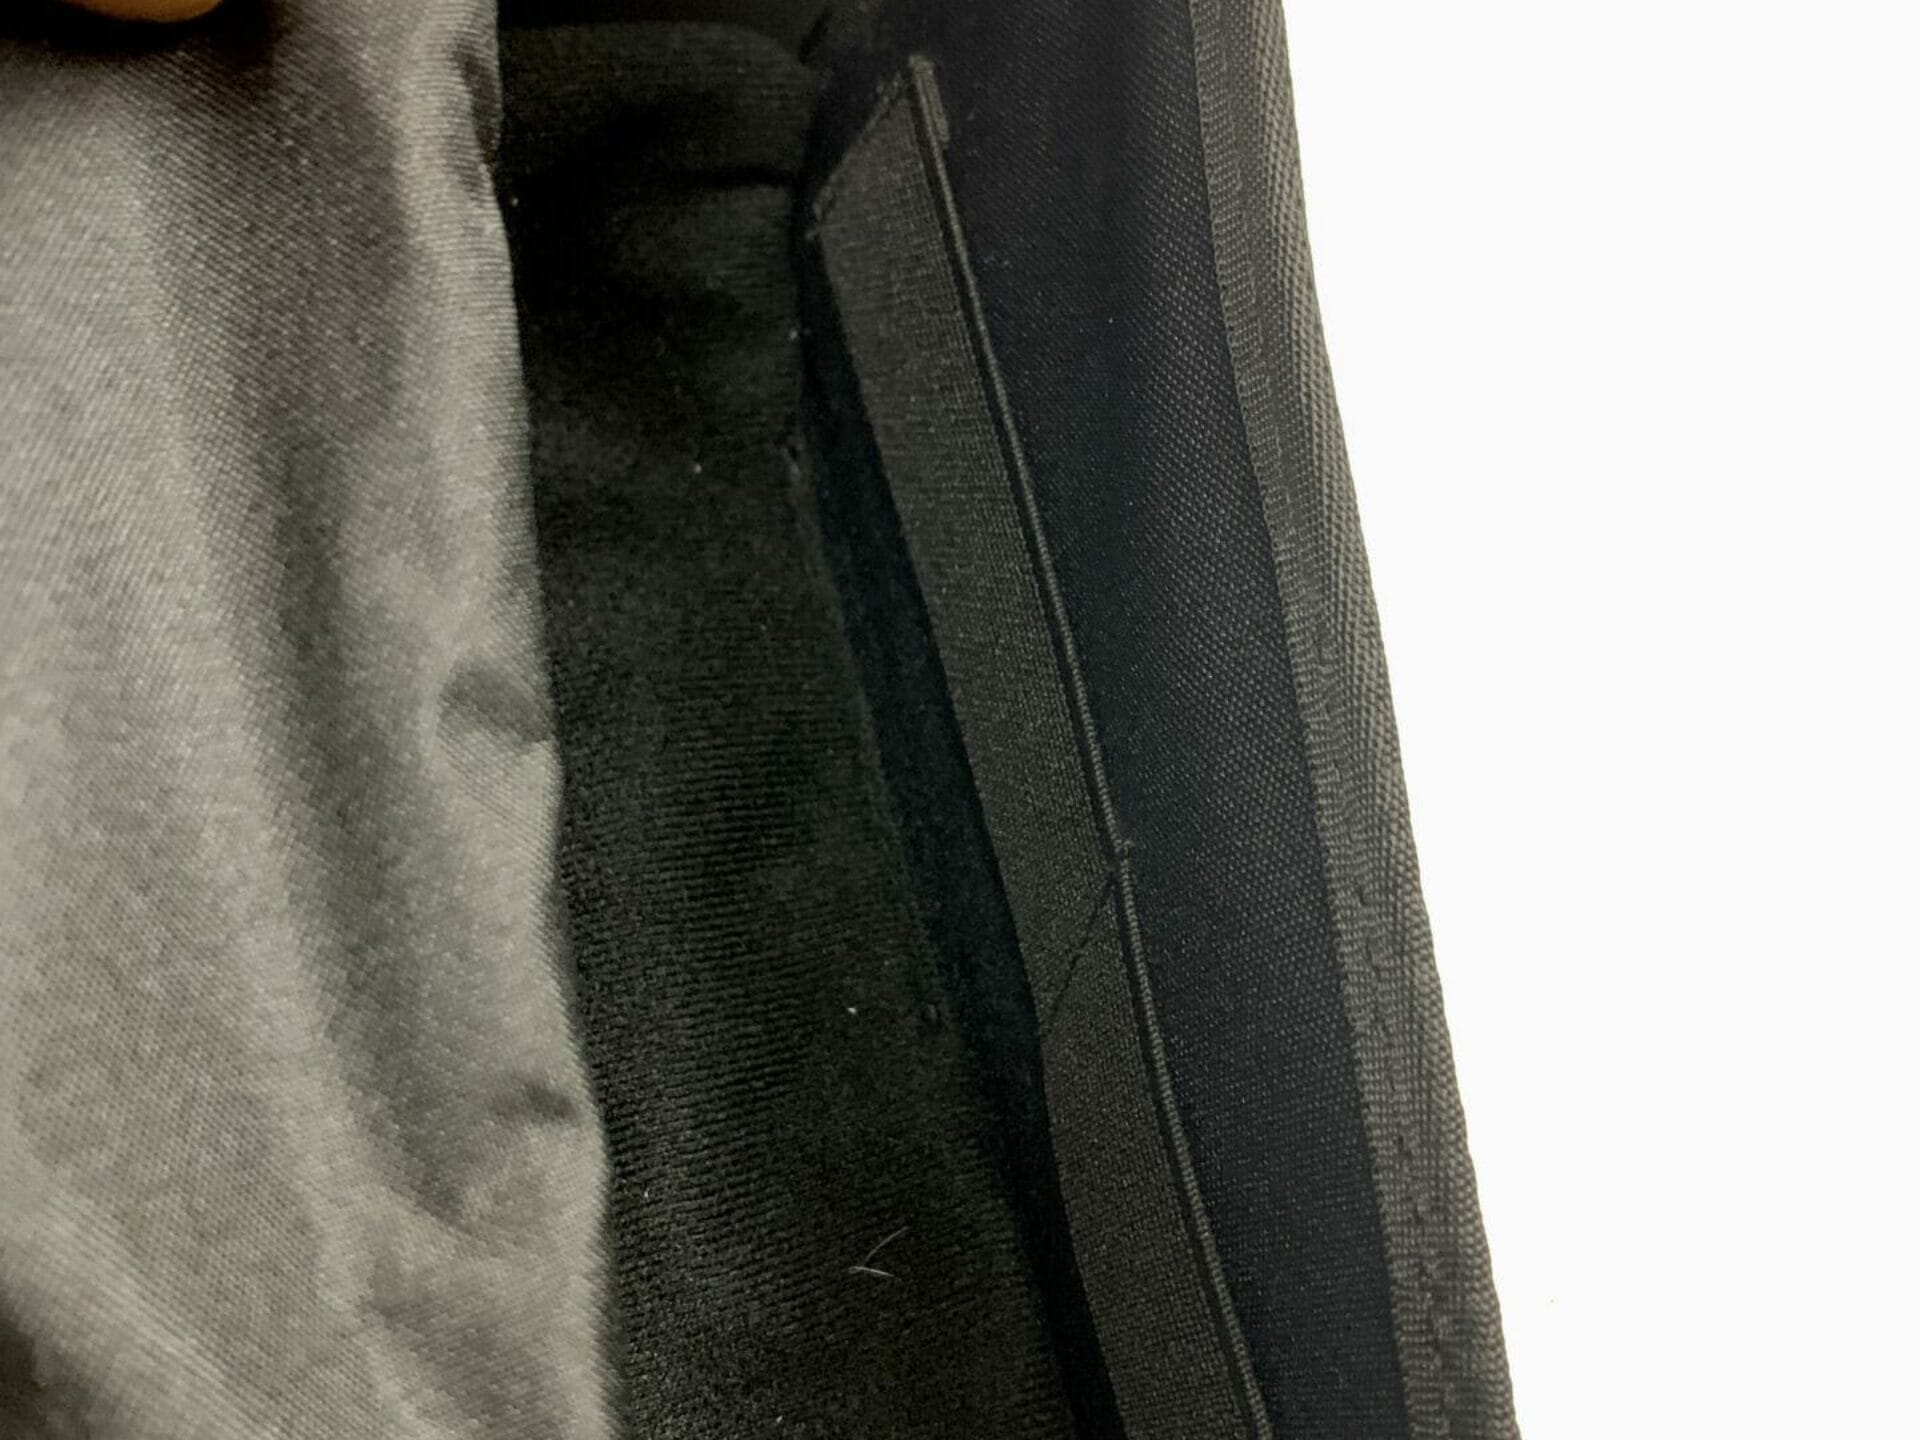 closer look of zipper compartment of bag